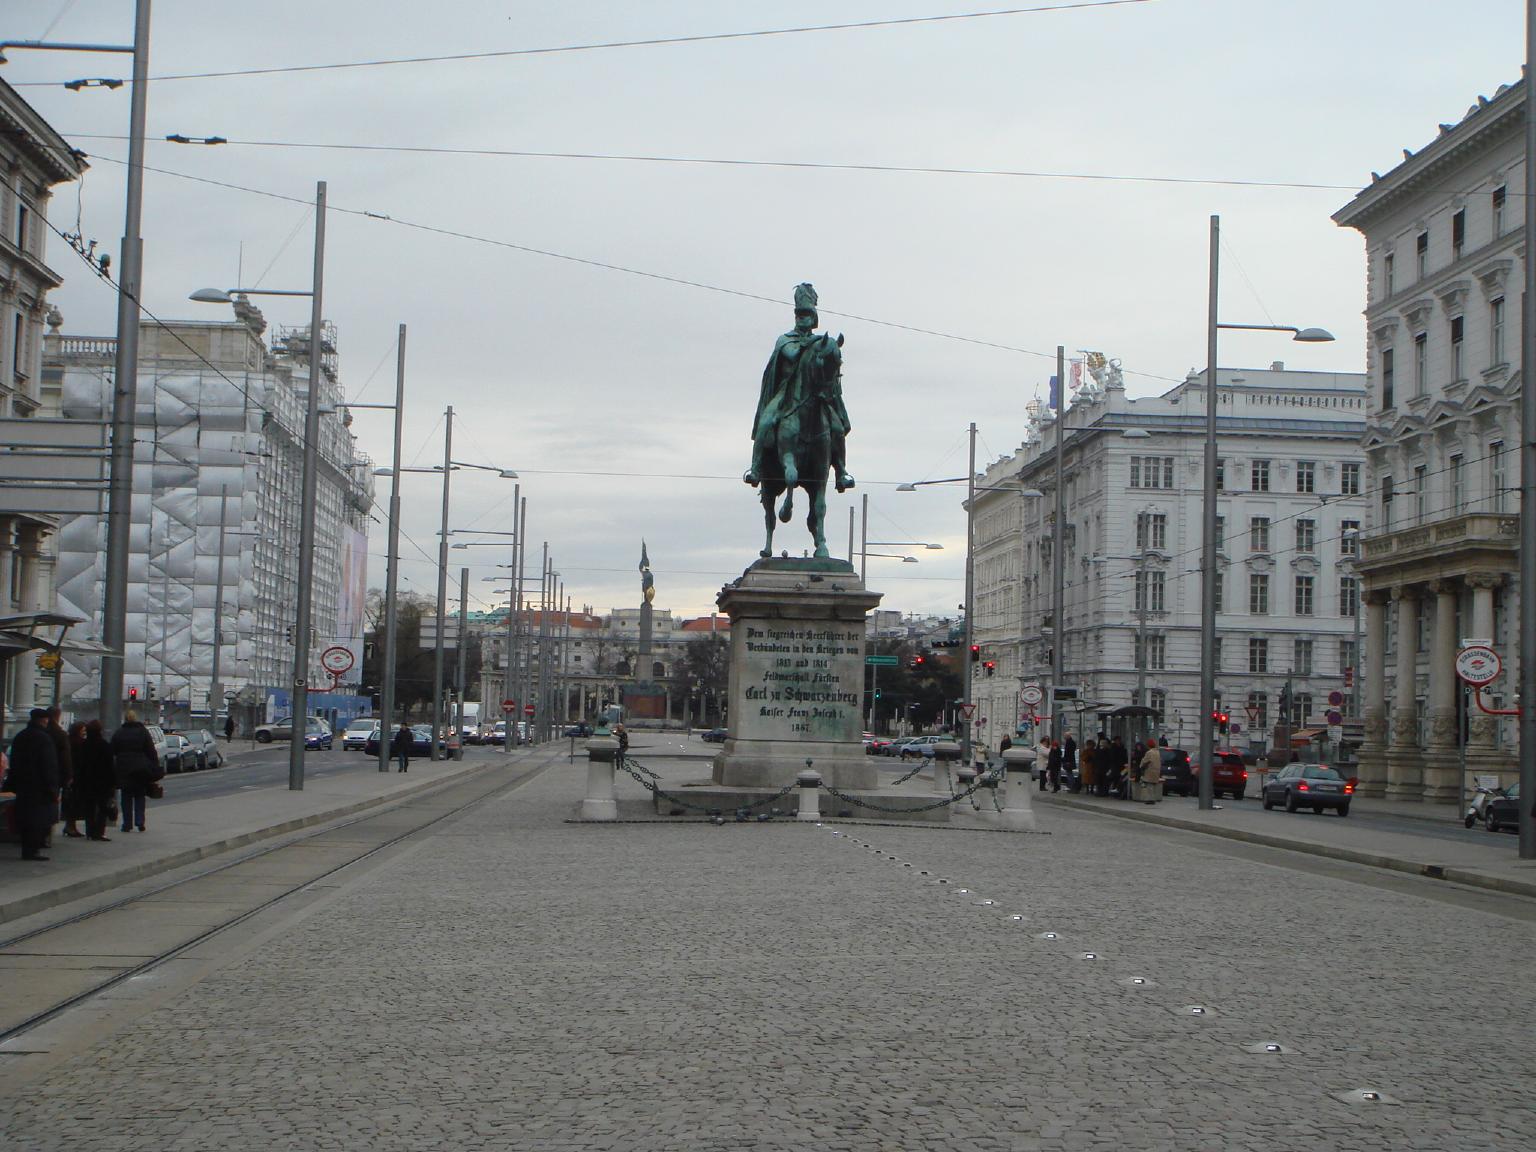 ベルベデーレ宮殿からシュバルツェンベルク広場を通って、リンクへ。